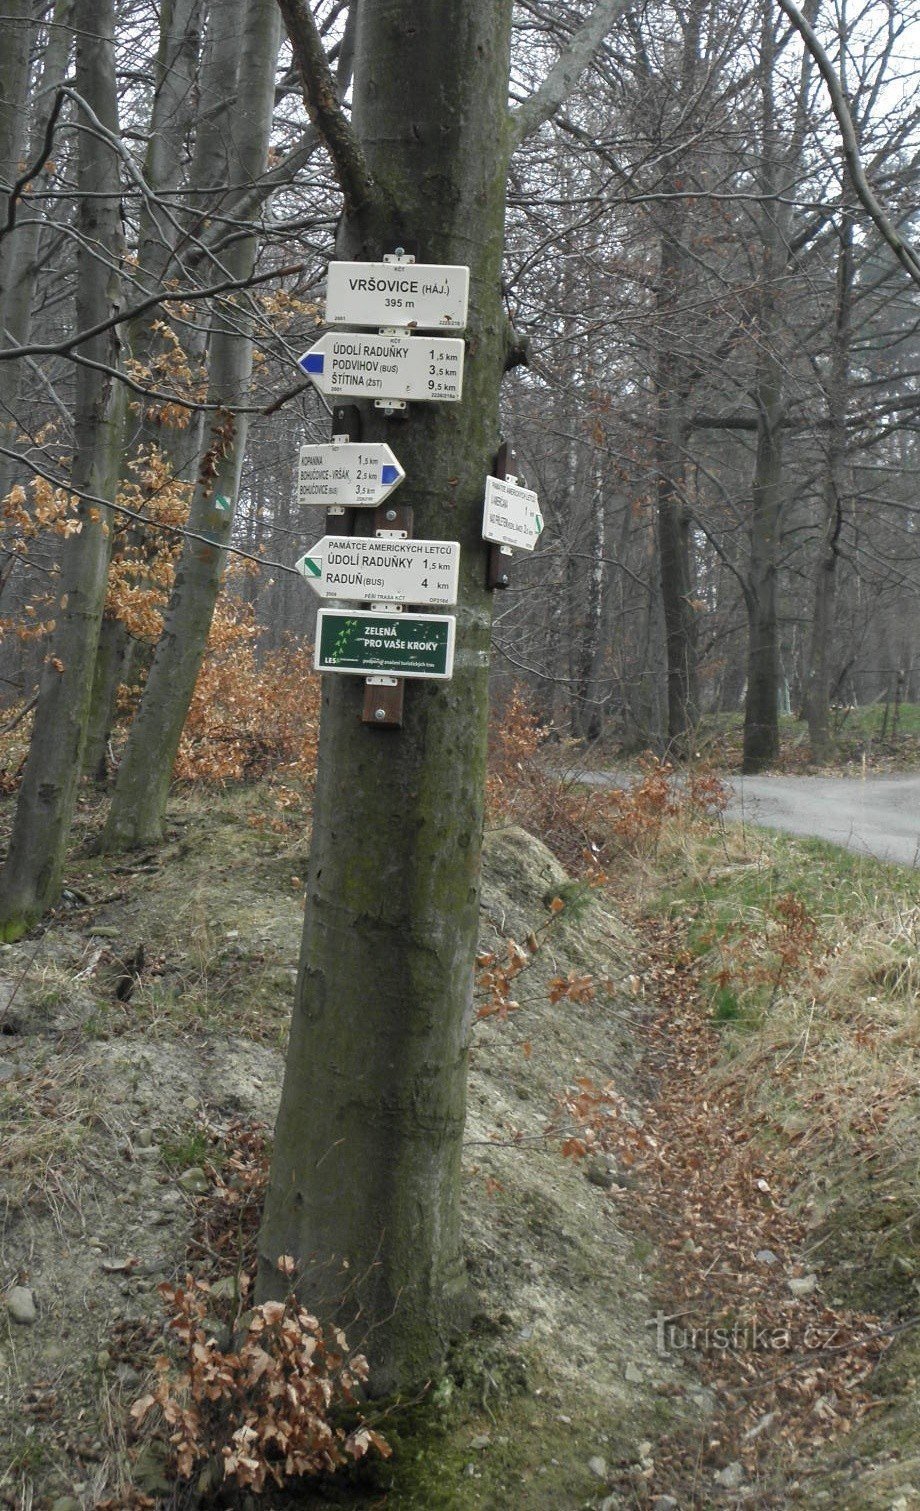 Encruzilhada do bosque Vršovice, visão geral